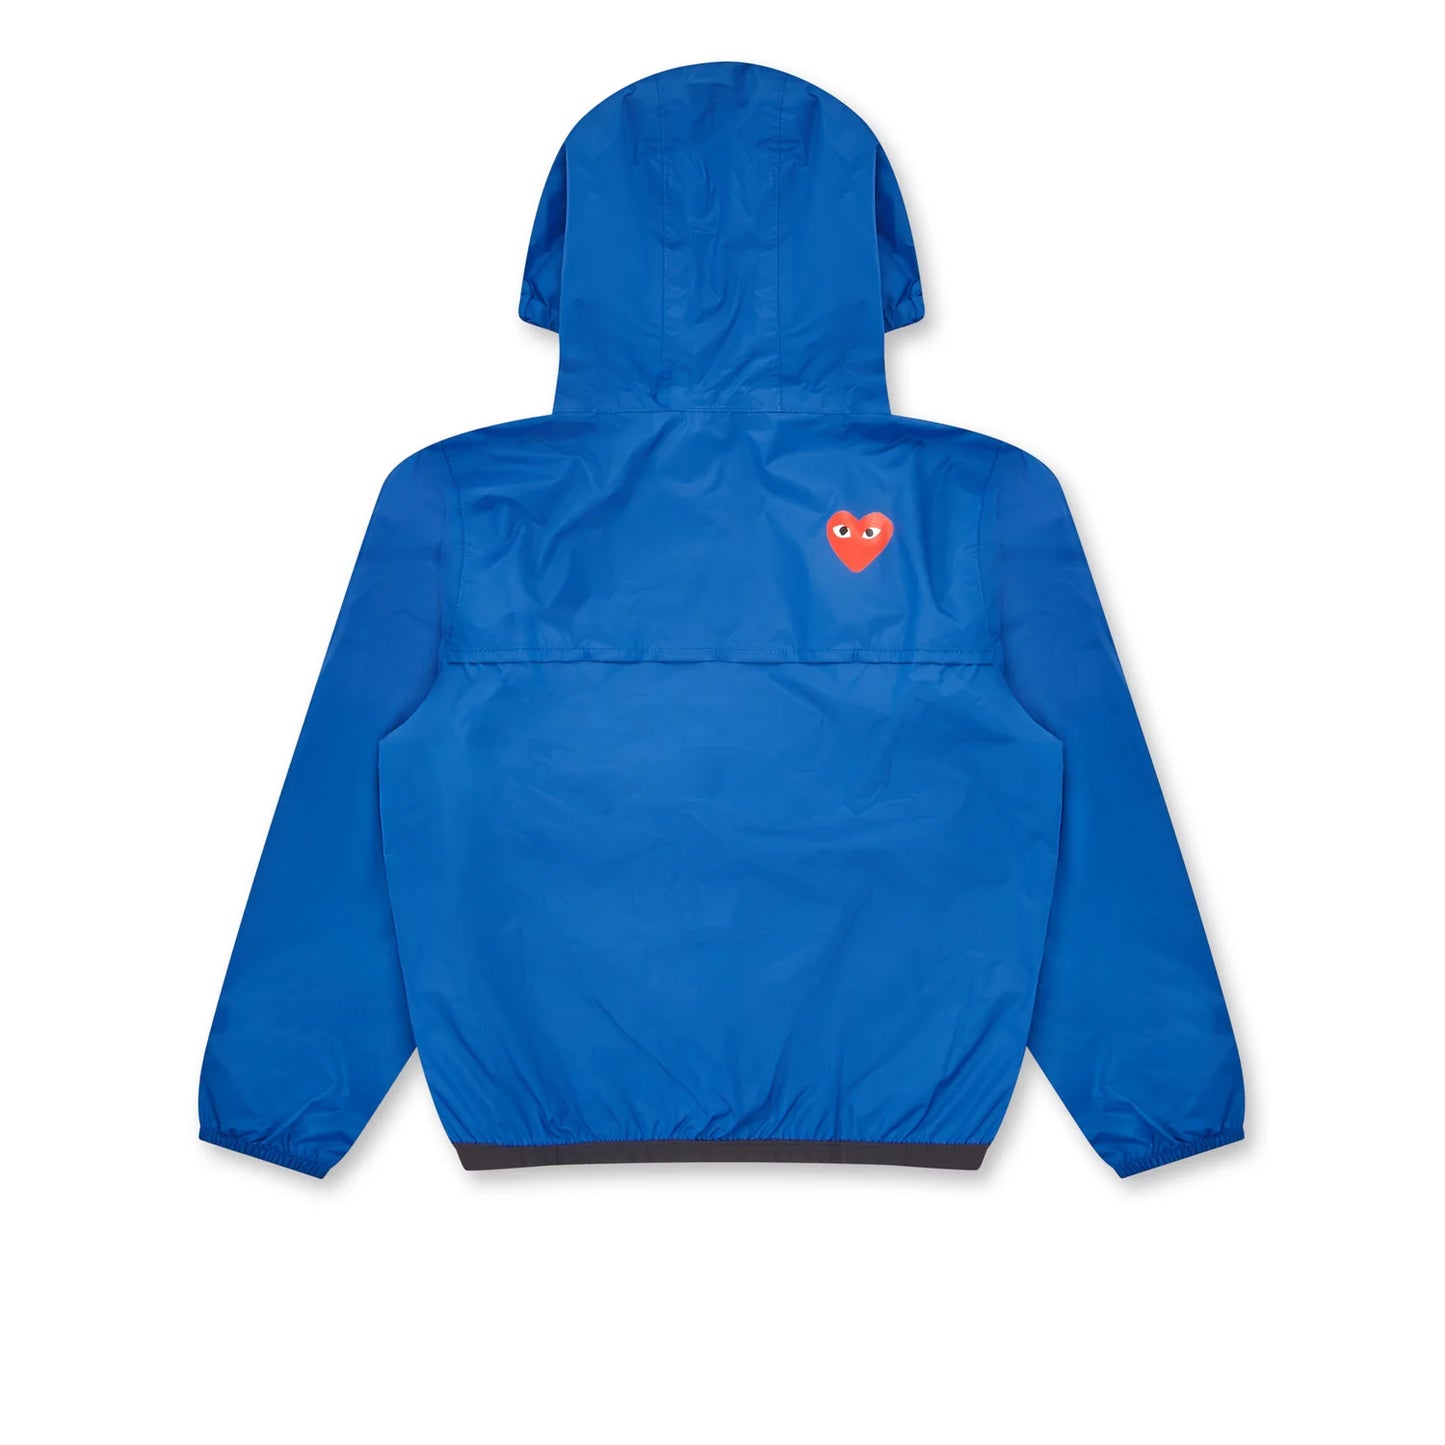 Child K-way jacket  with zip